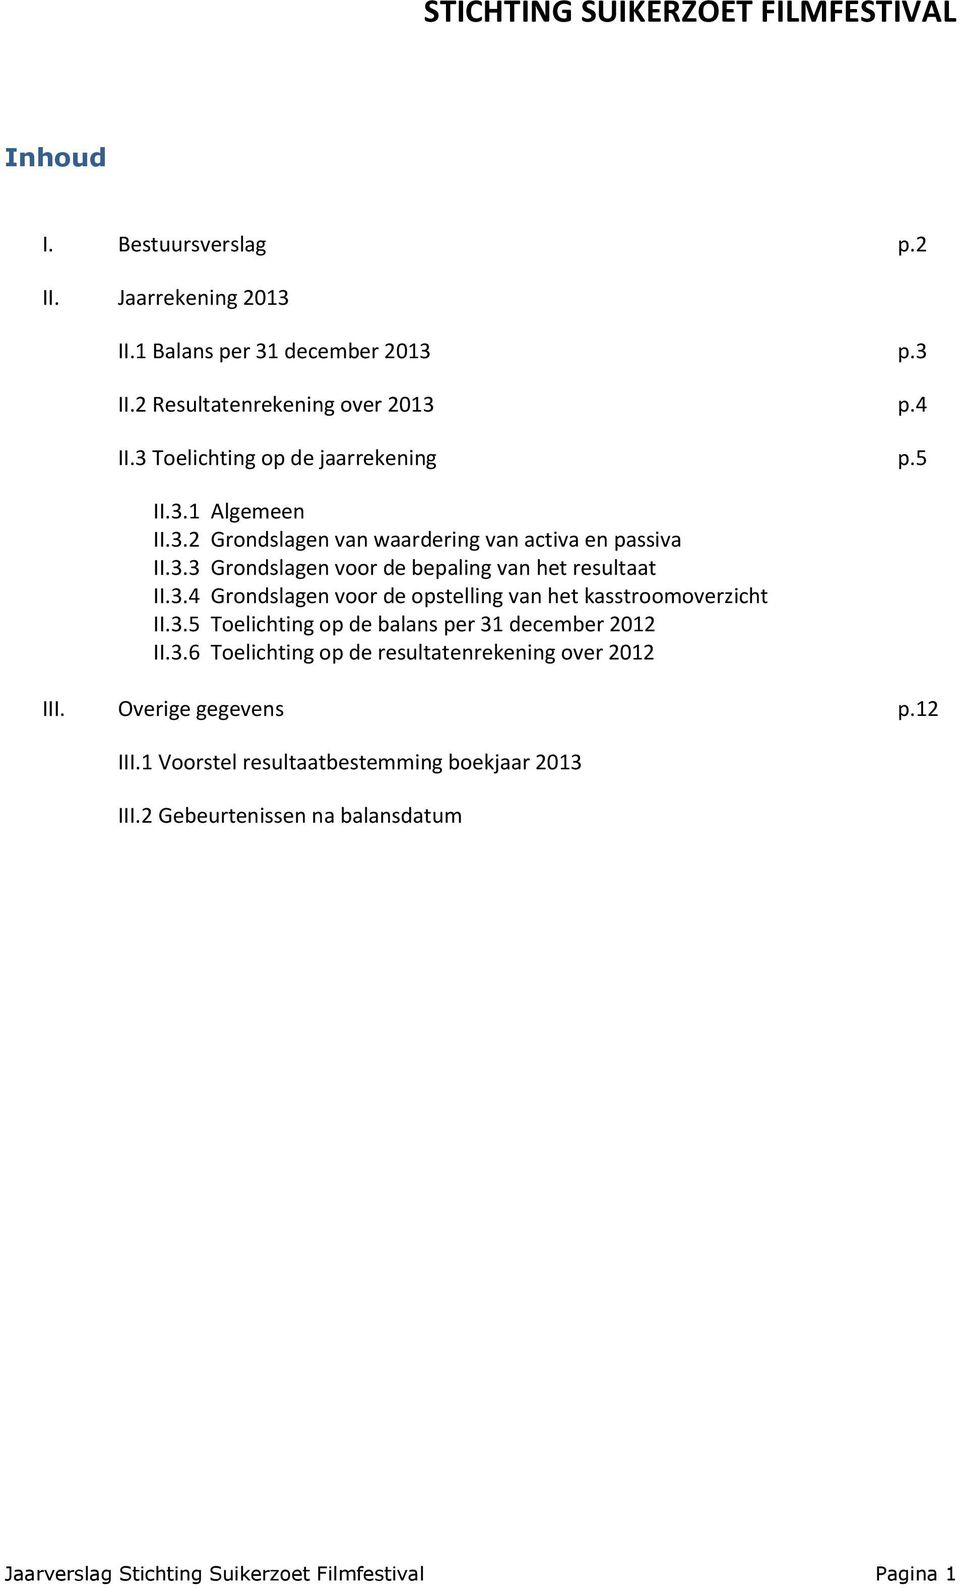 3.4 Grondslagen voor de opstelling van het kasstroomoverzicht II.3.5 Toelichting op de balans per 31 december 2012 II.3.6 Toelichting op de resultatenrekening over 2012 III.